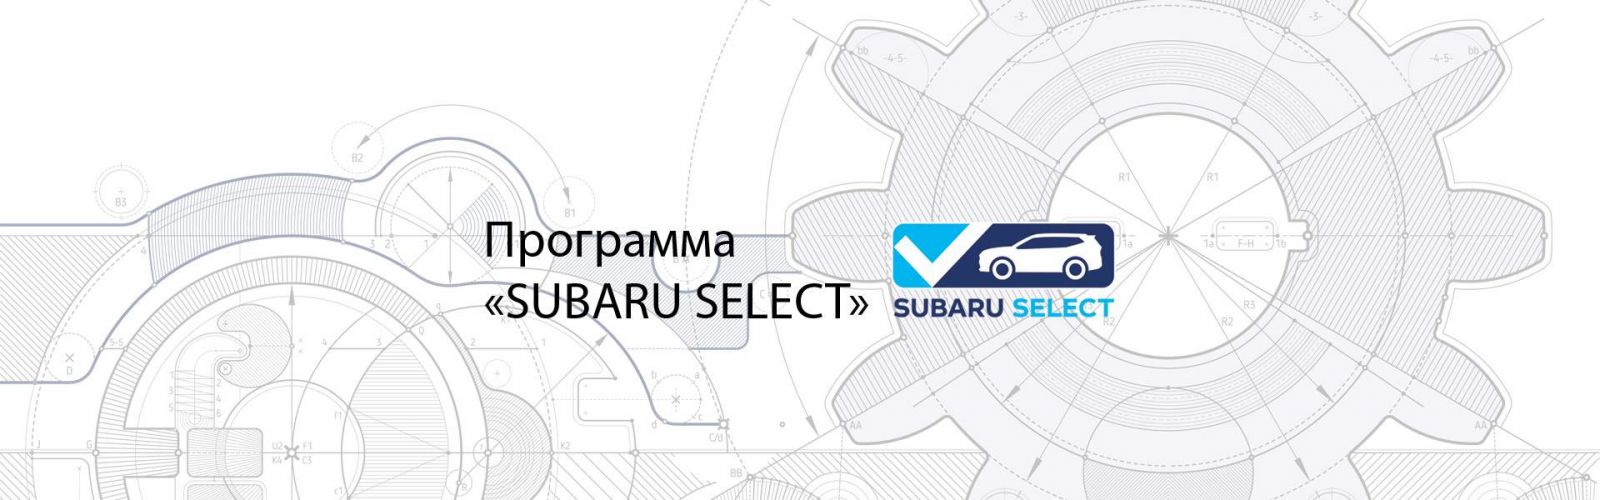 Subaru Certified Used Vehicle (CPO) Program